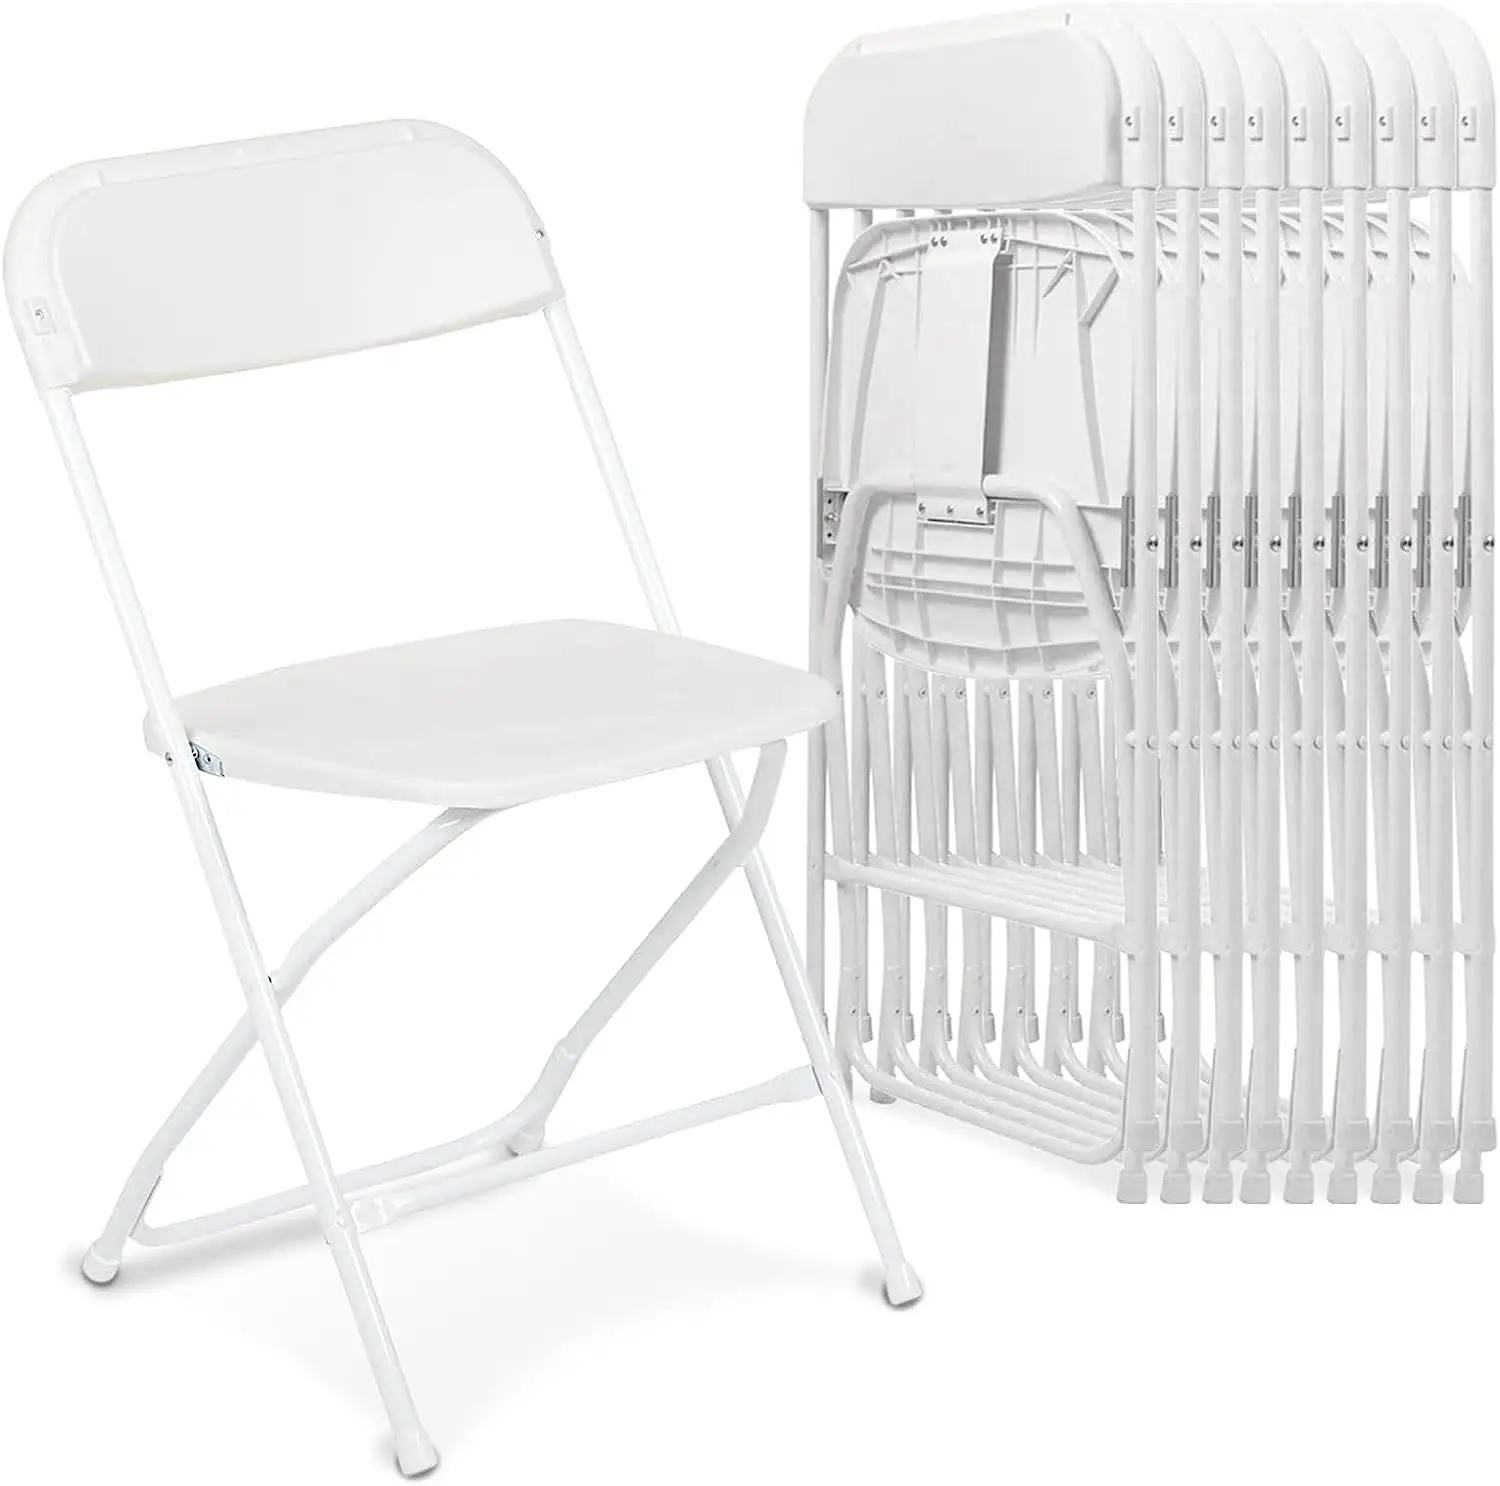 Venta al por mayor de polipropileno Camping Picnic marco de metal apilable sillas plegables de plástico